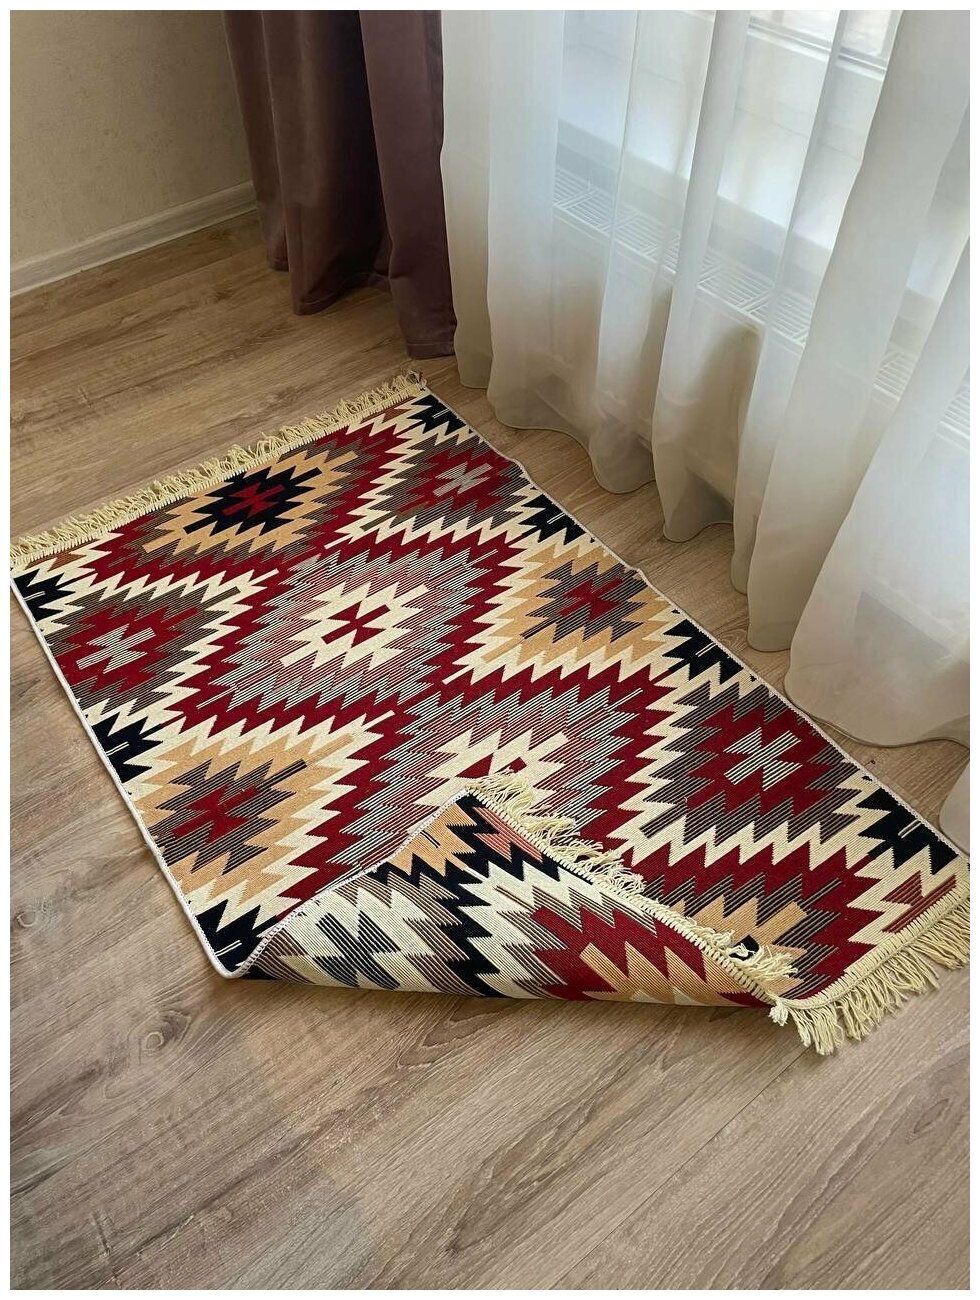 Хлопковый двусторонний килим / ковер / ковровая дорожка / прикроватный коврик / экокилим / Musafir home / 80 см на 125 см